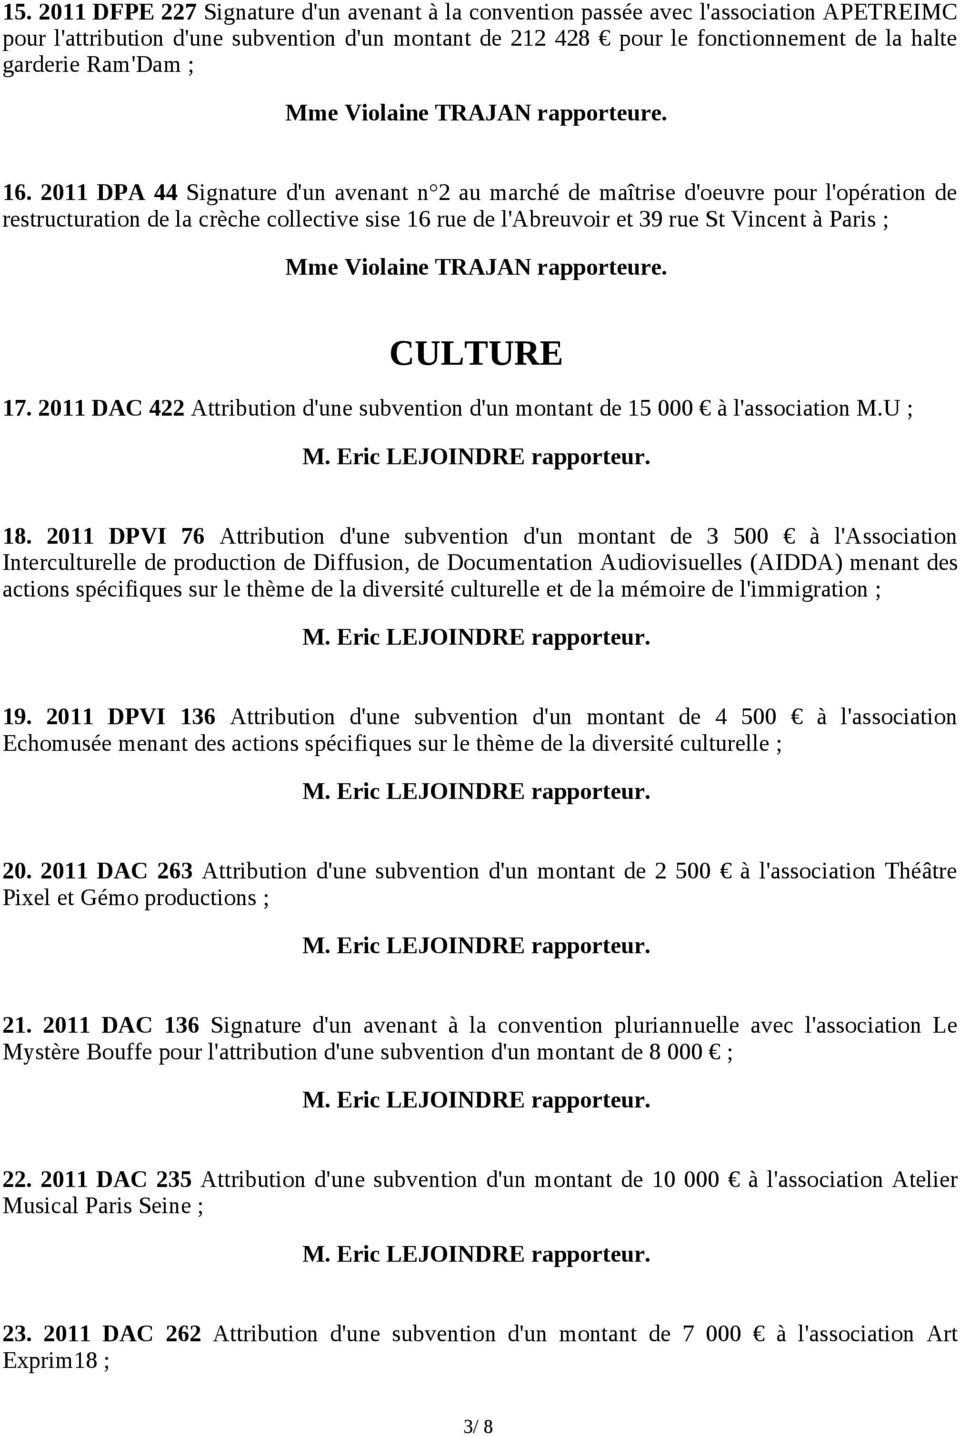 2011 DPA 44 Signature d'un avenant n 2 au marché de maîtrise d'oeuvre pour l'opération de restructuration de la crèche collective sise 16 rue de l'abreuvoir et 39 rue St Vincent à Paris ; CULTURE 17.